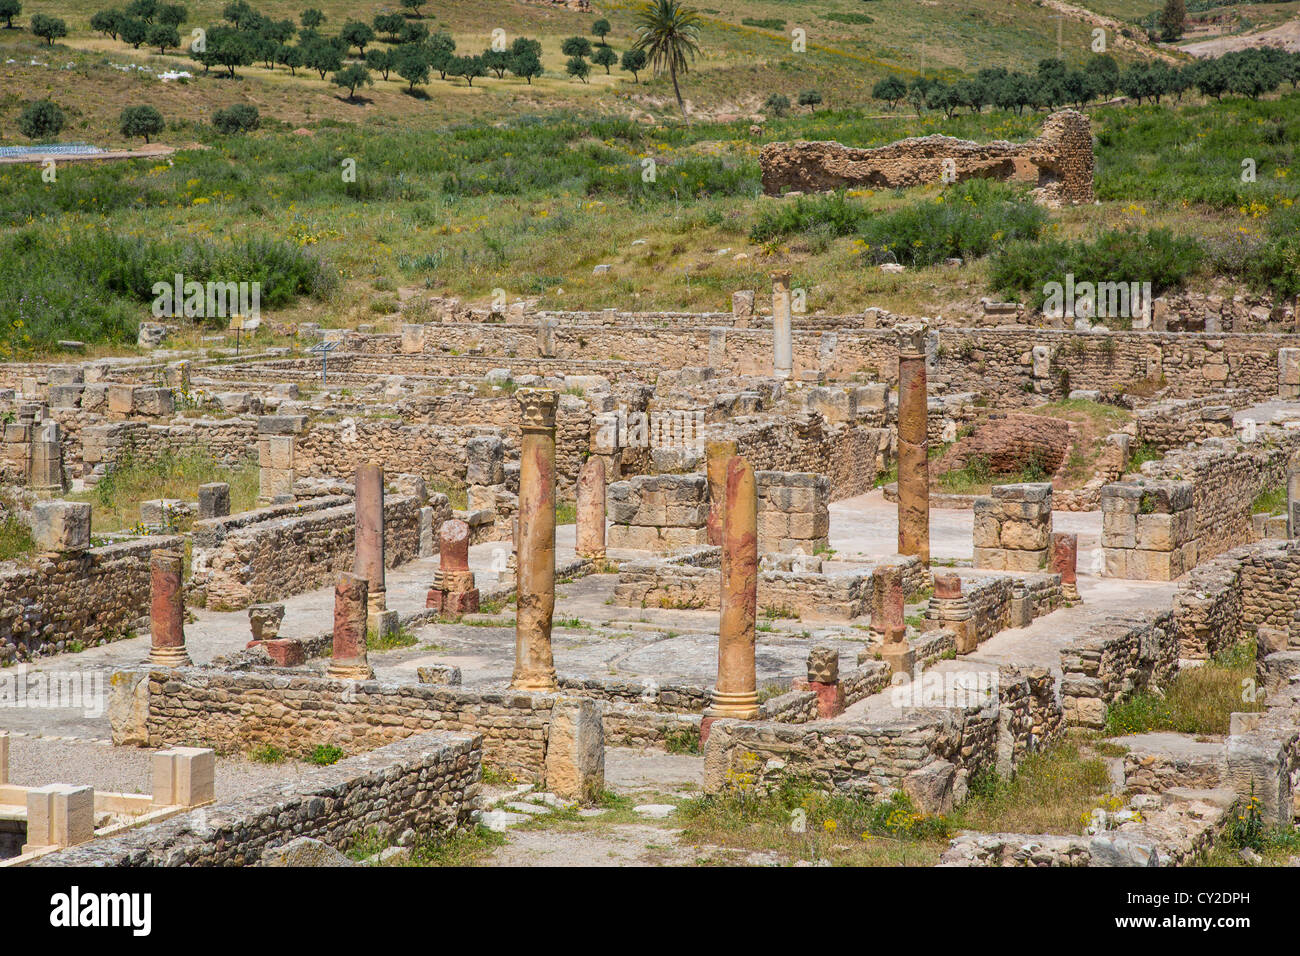 Ruines Romaines de Bulla Regia près de Jendouba Tunisie Banque D'Images